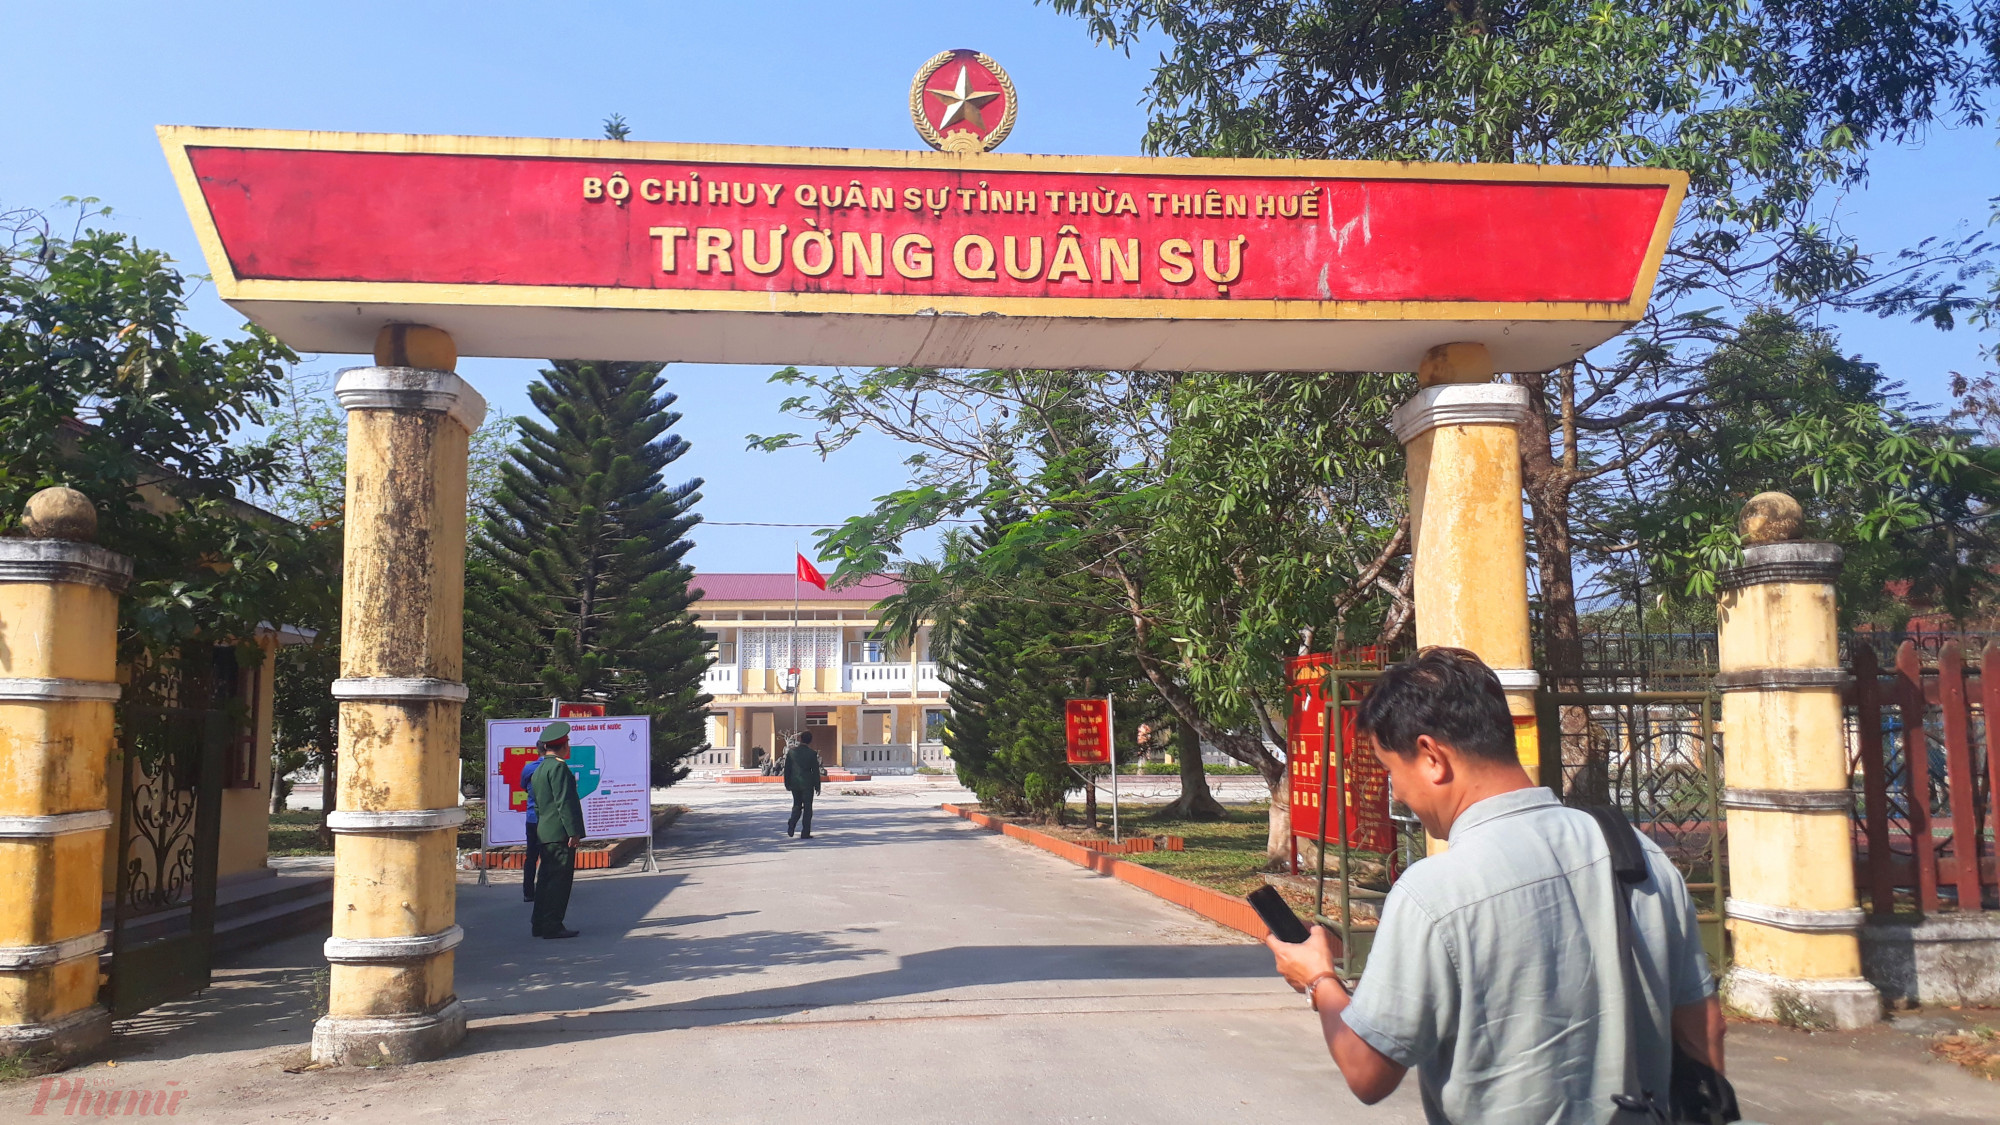 Ngày 6/2, Bộ chỉ huy quân sự tỉnh Thừa Thiên Huế huy động 60 cán bộ, chiến sĩ thuộc Tiểu đoàn 3 và Tiểu đoàn 1 đến dọn vệ sinh trường Quân sự tỉnh ở xã Thủy Bằng (thị xã Hương Thủy). 